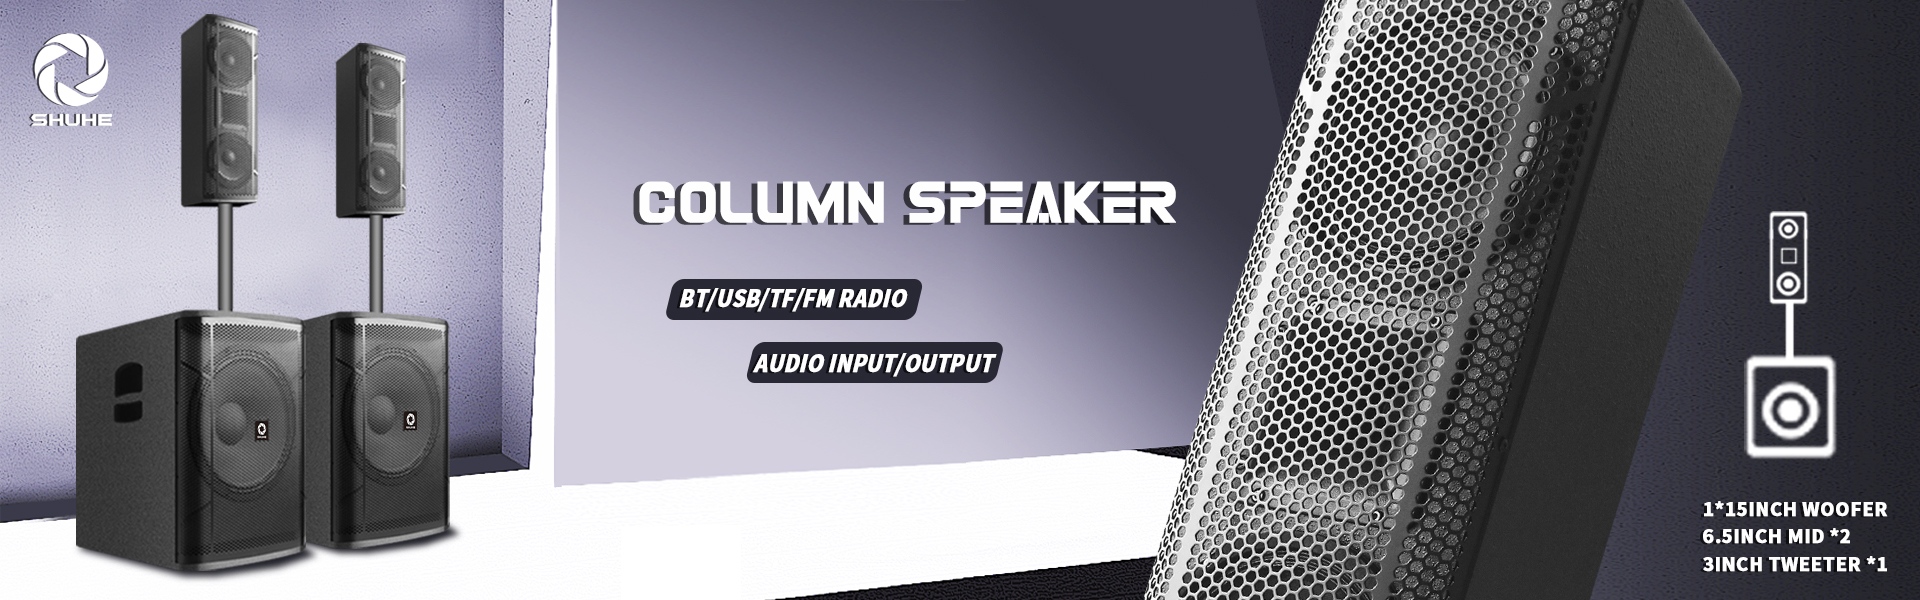 speaker,speaker accessory,microphone,YINHE ELECTRONIC TECHONLOGY CO ., LTD